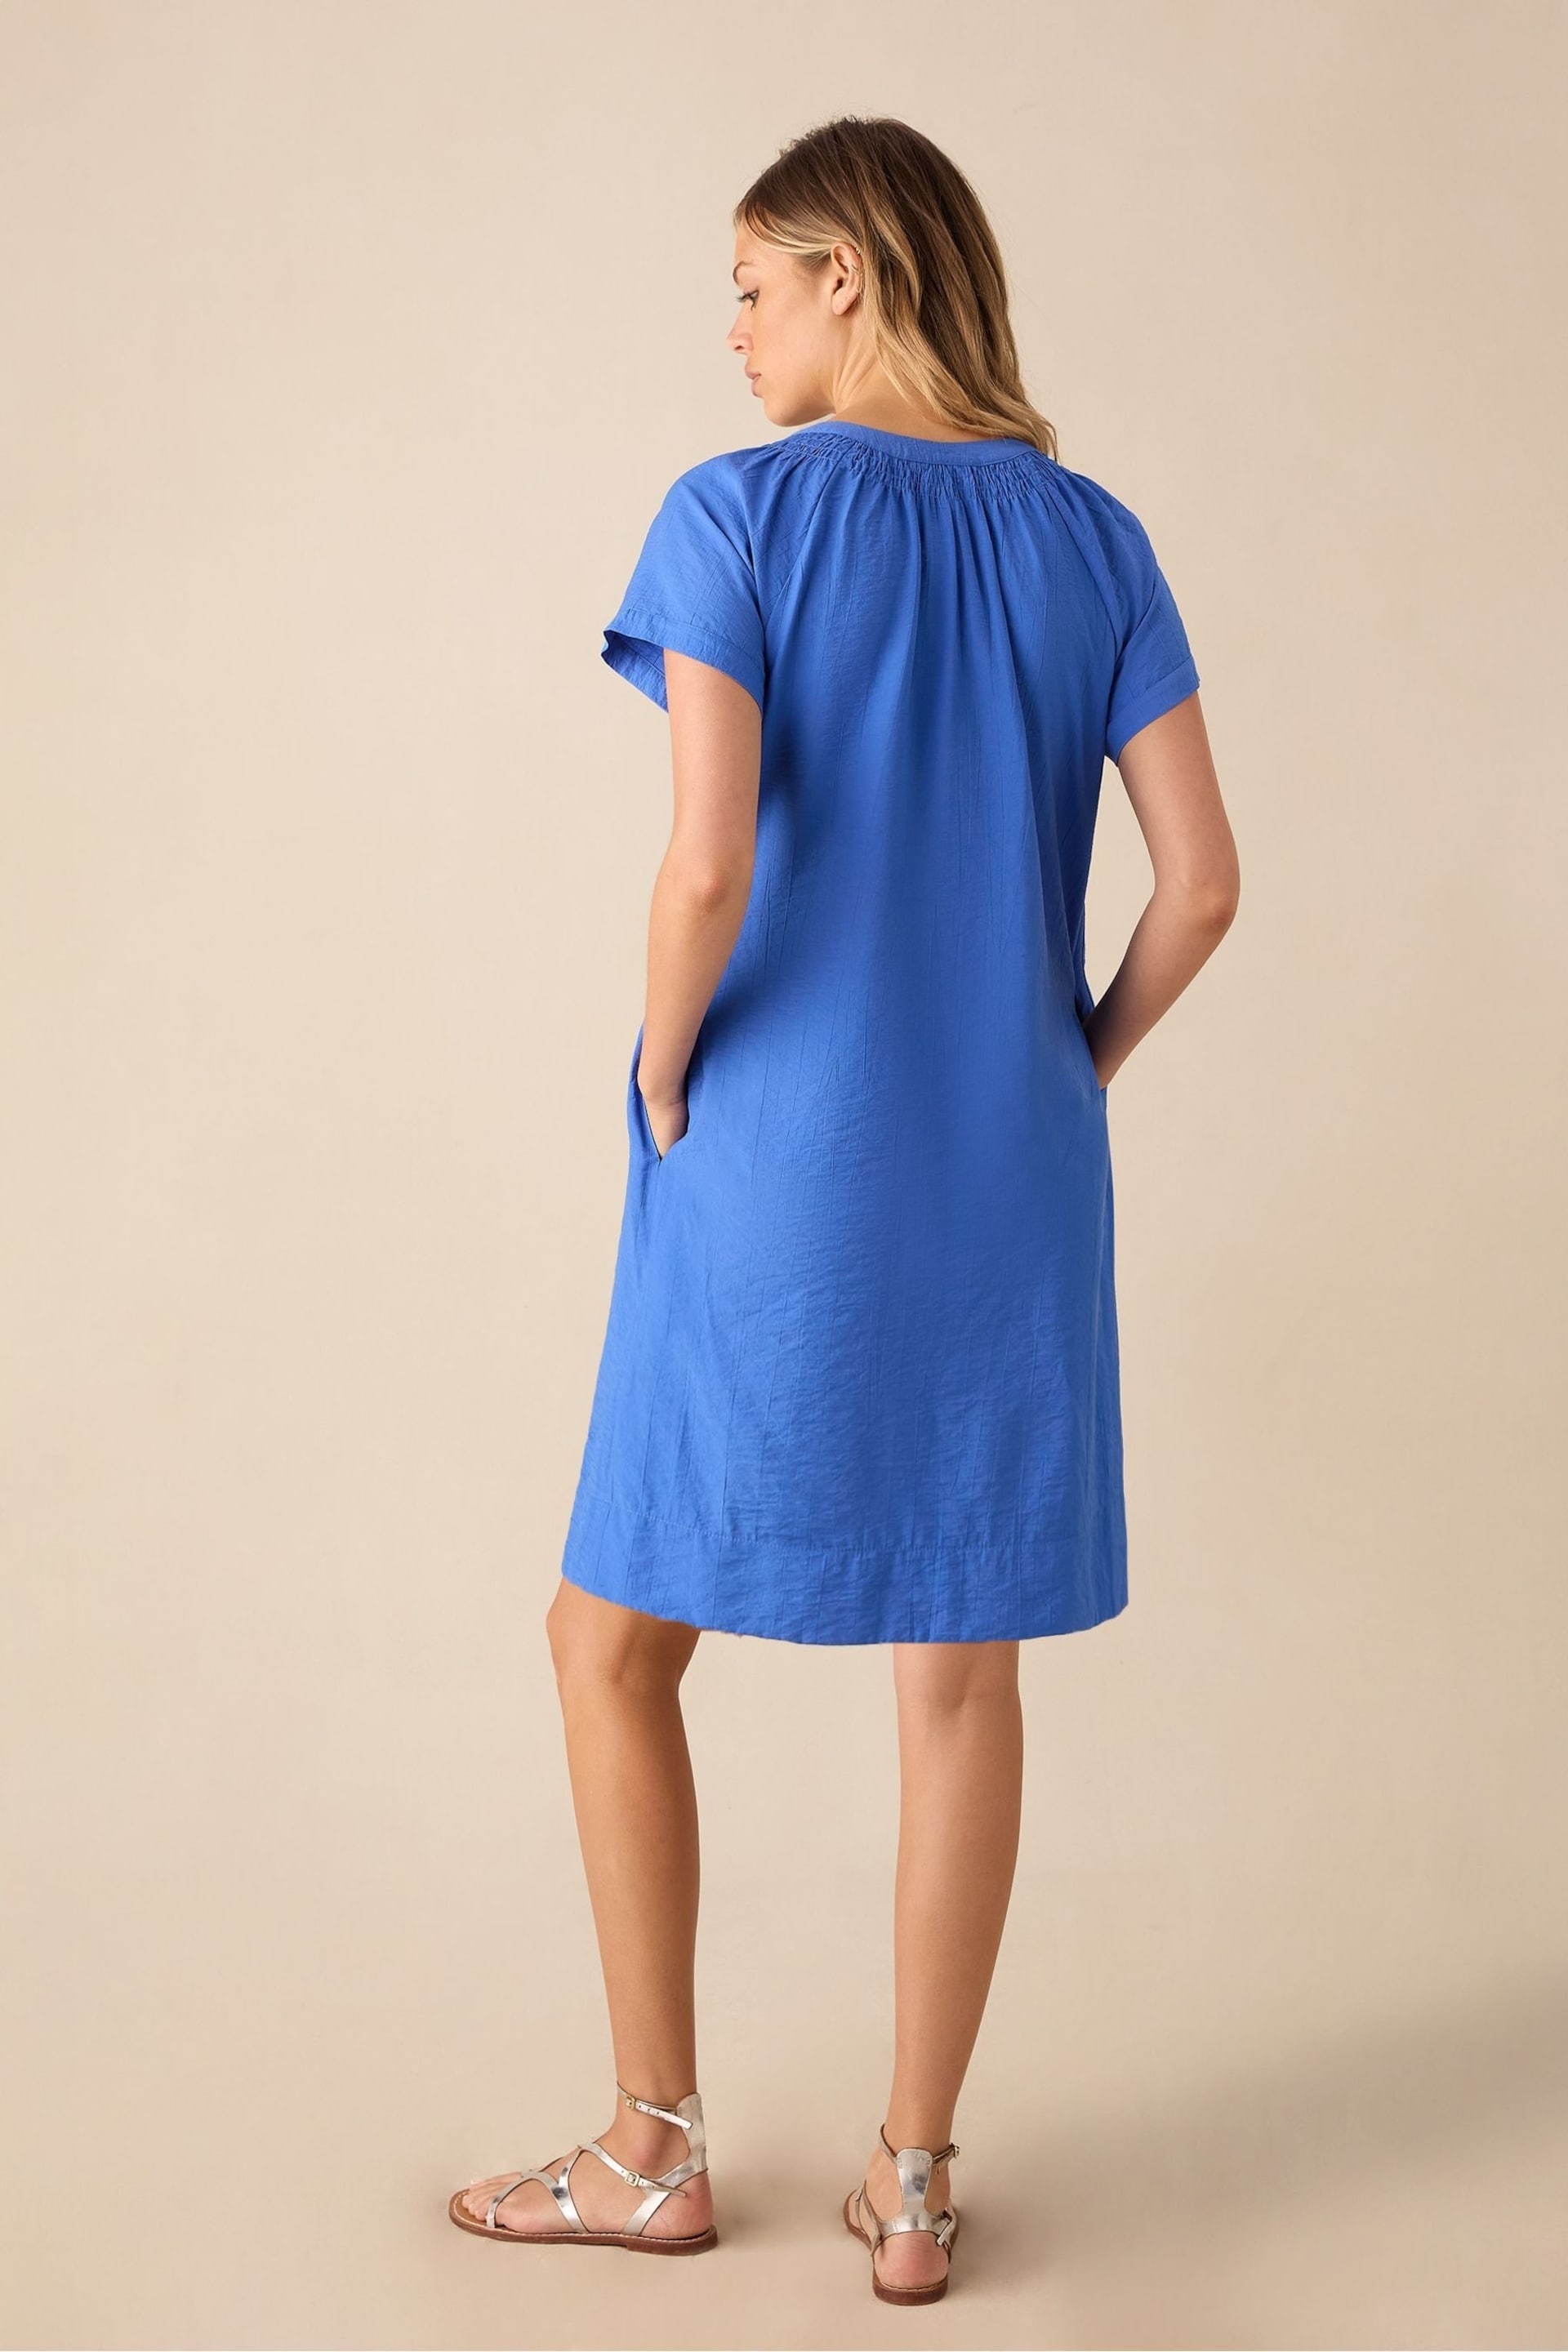 Ro&Zo Blue Gathered Neck Short Dress - Image 3 of 3